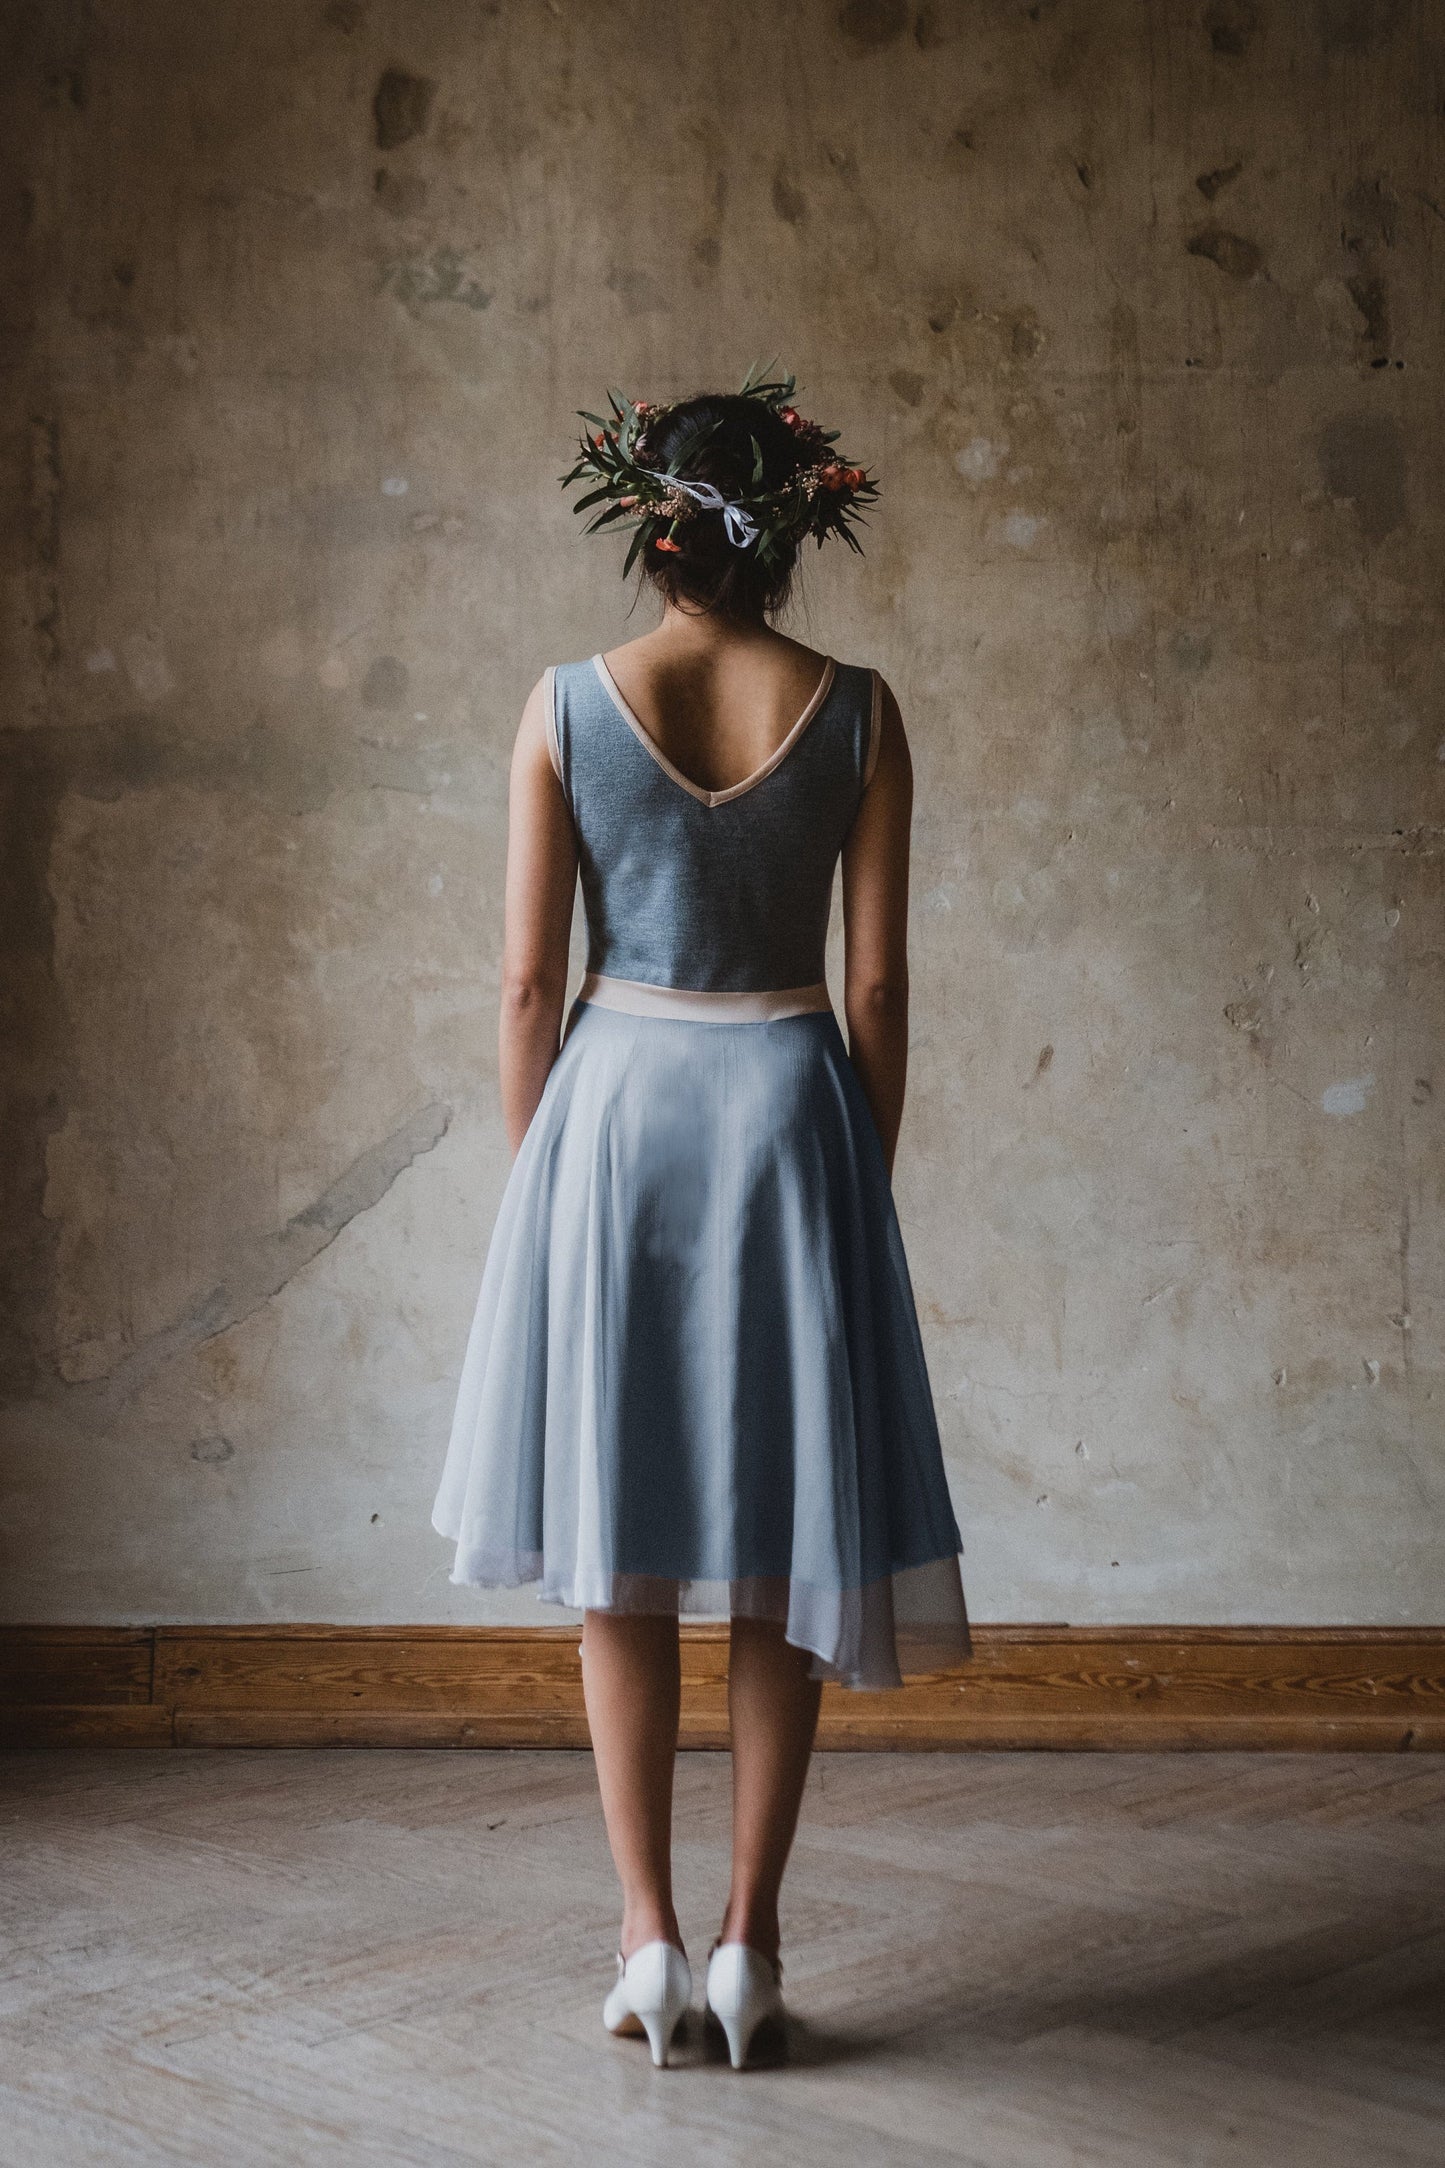 Wolkig leichtes Chiffon Kleid in pudrigem Graublau mit einem lässig, legerem Feinstrickoberteil